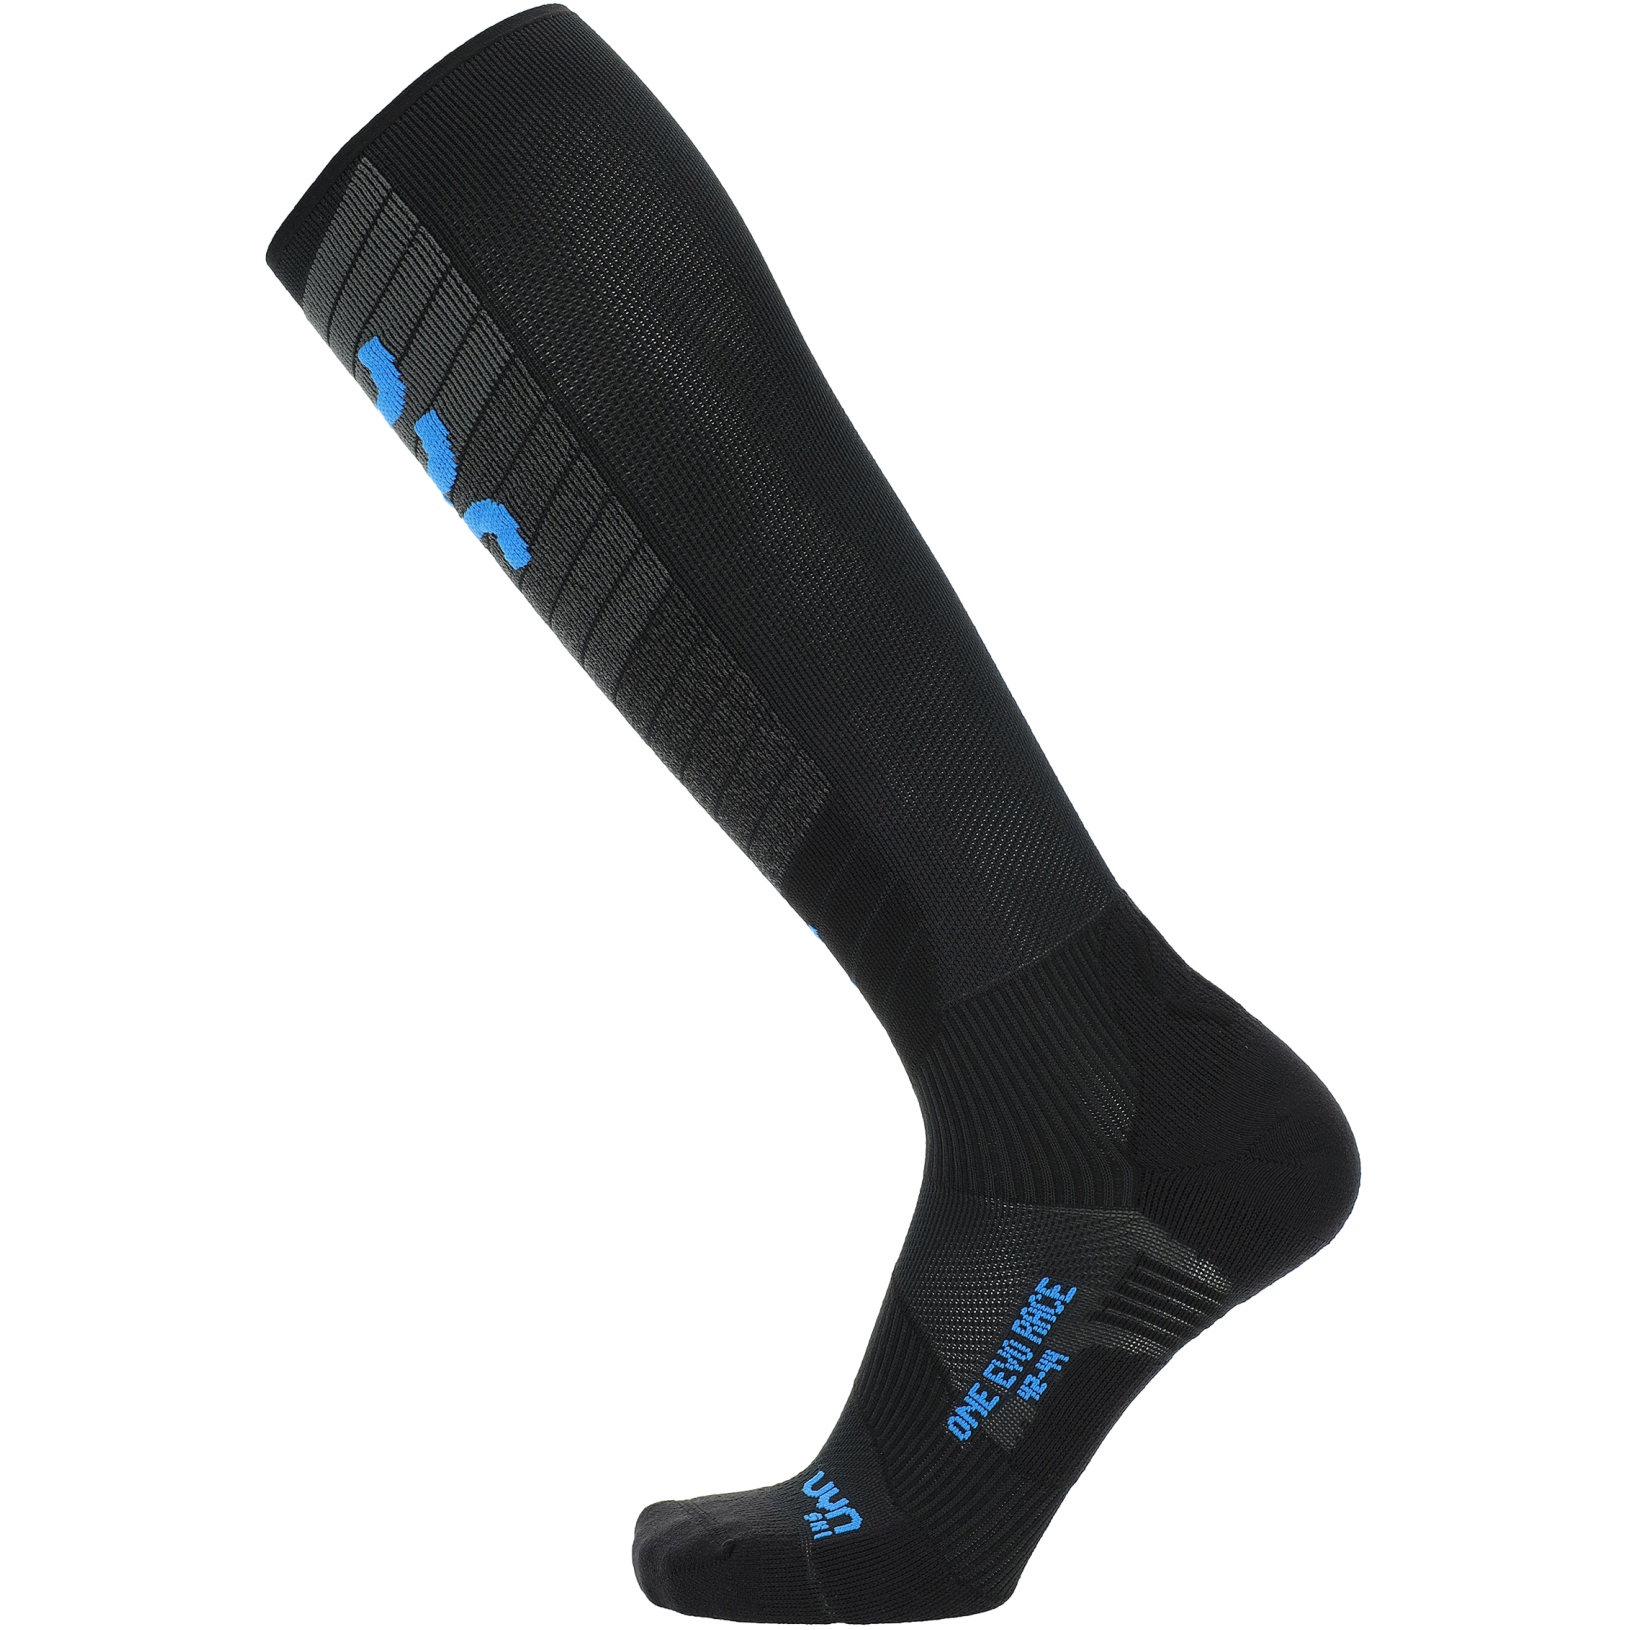 Produktbild von UYN Ski Evo Race One Socken Herren - Schwarz/Blau